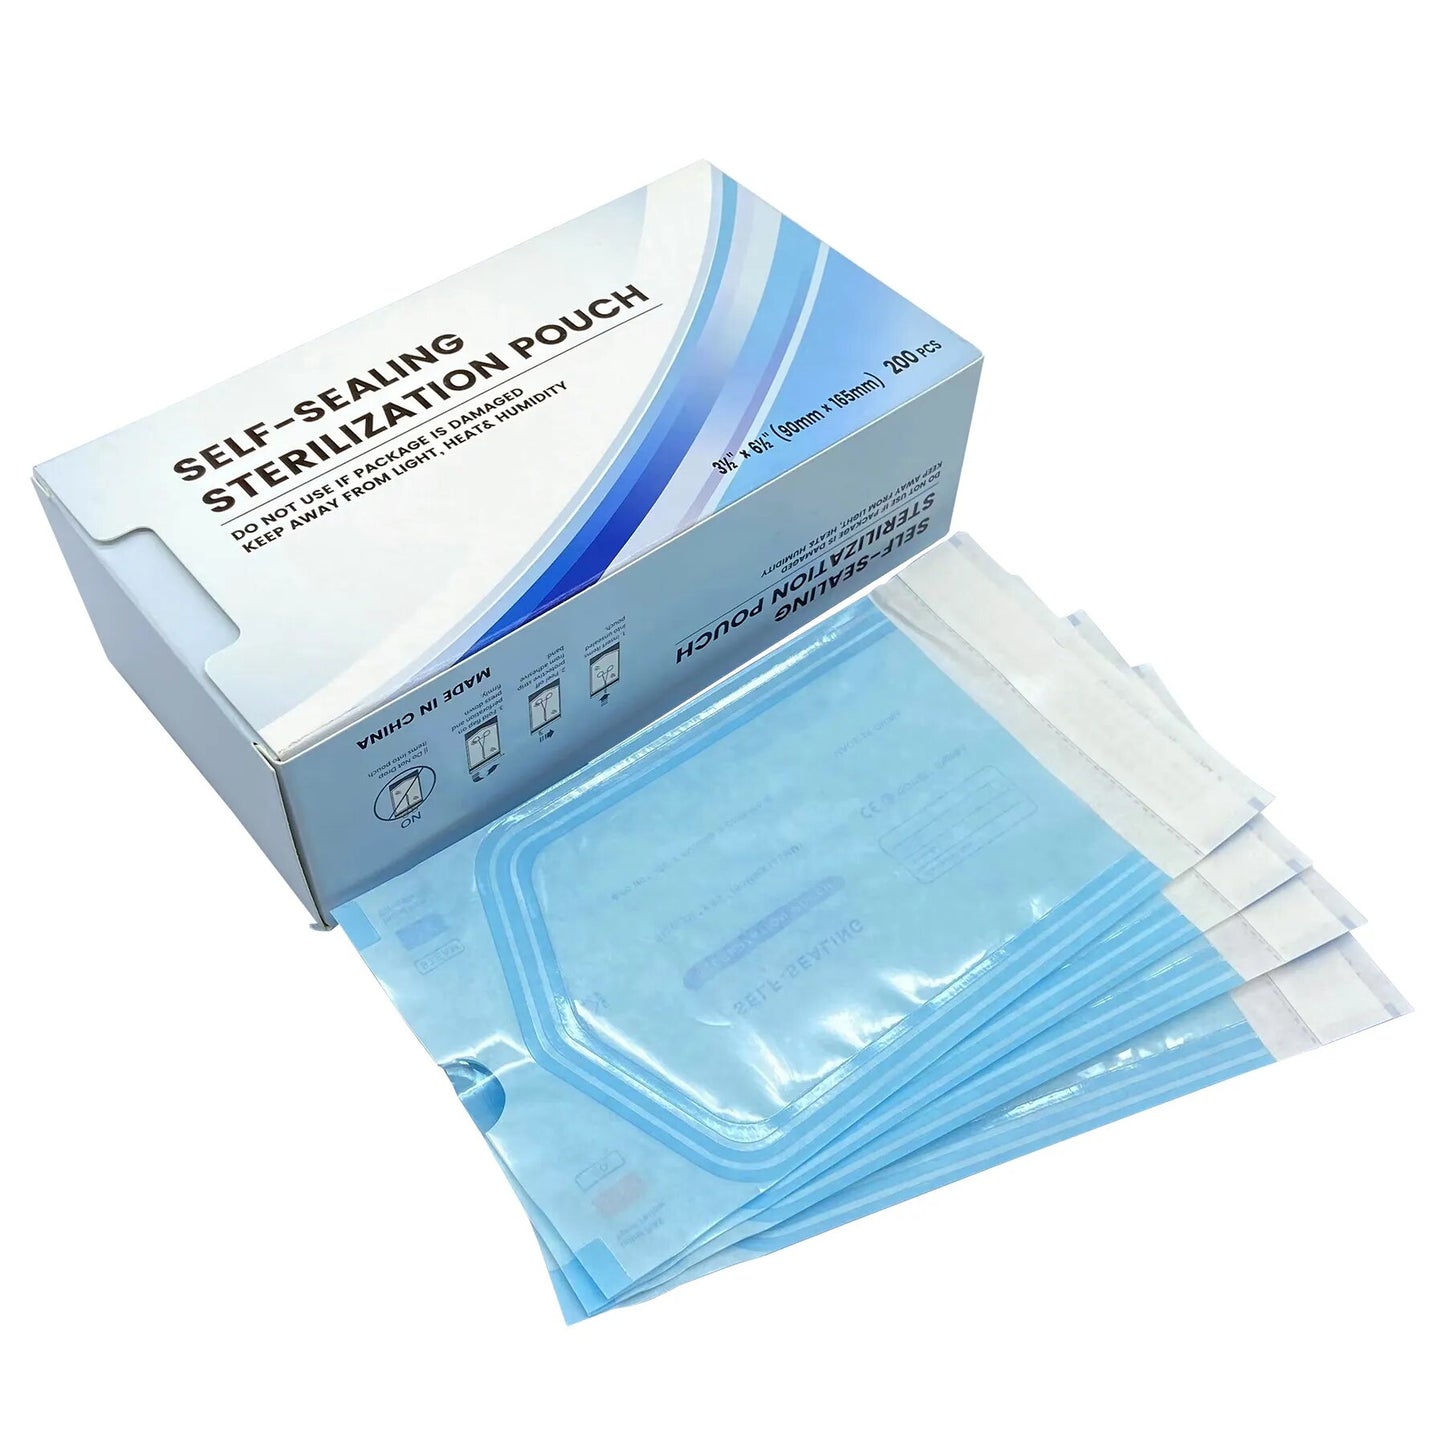 Self-sealing Sterilization Pouches (200pcs/box)